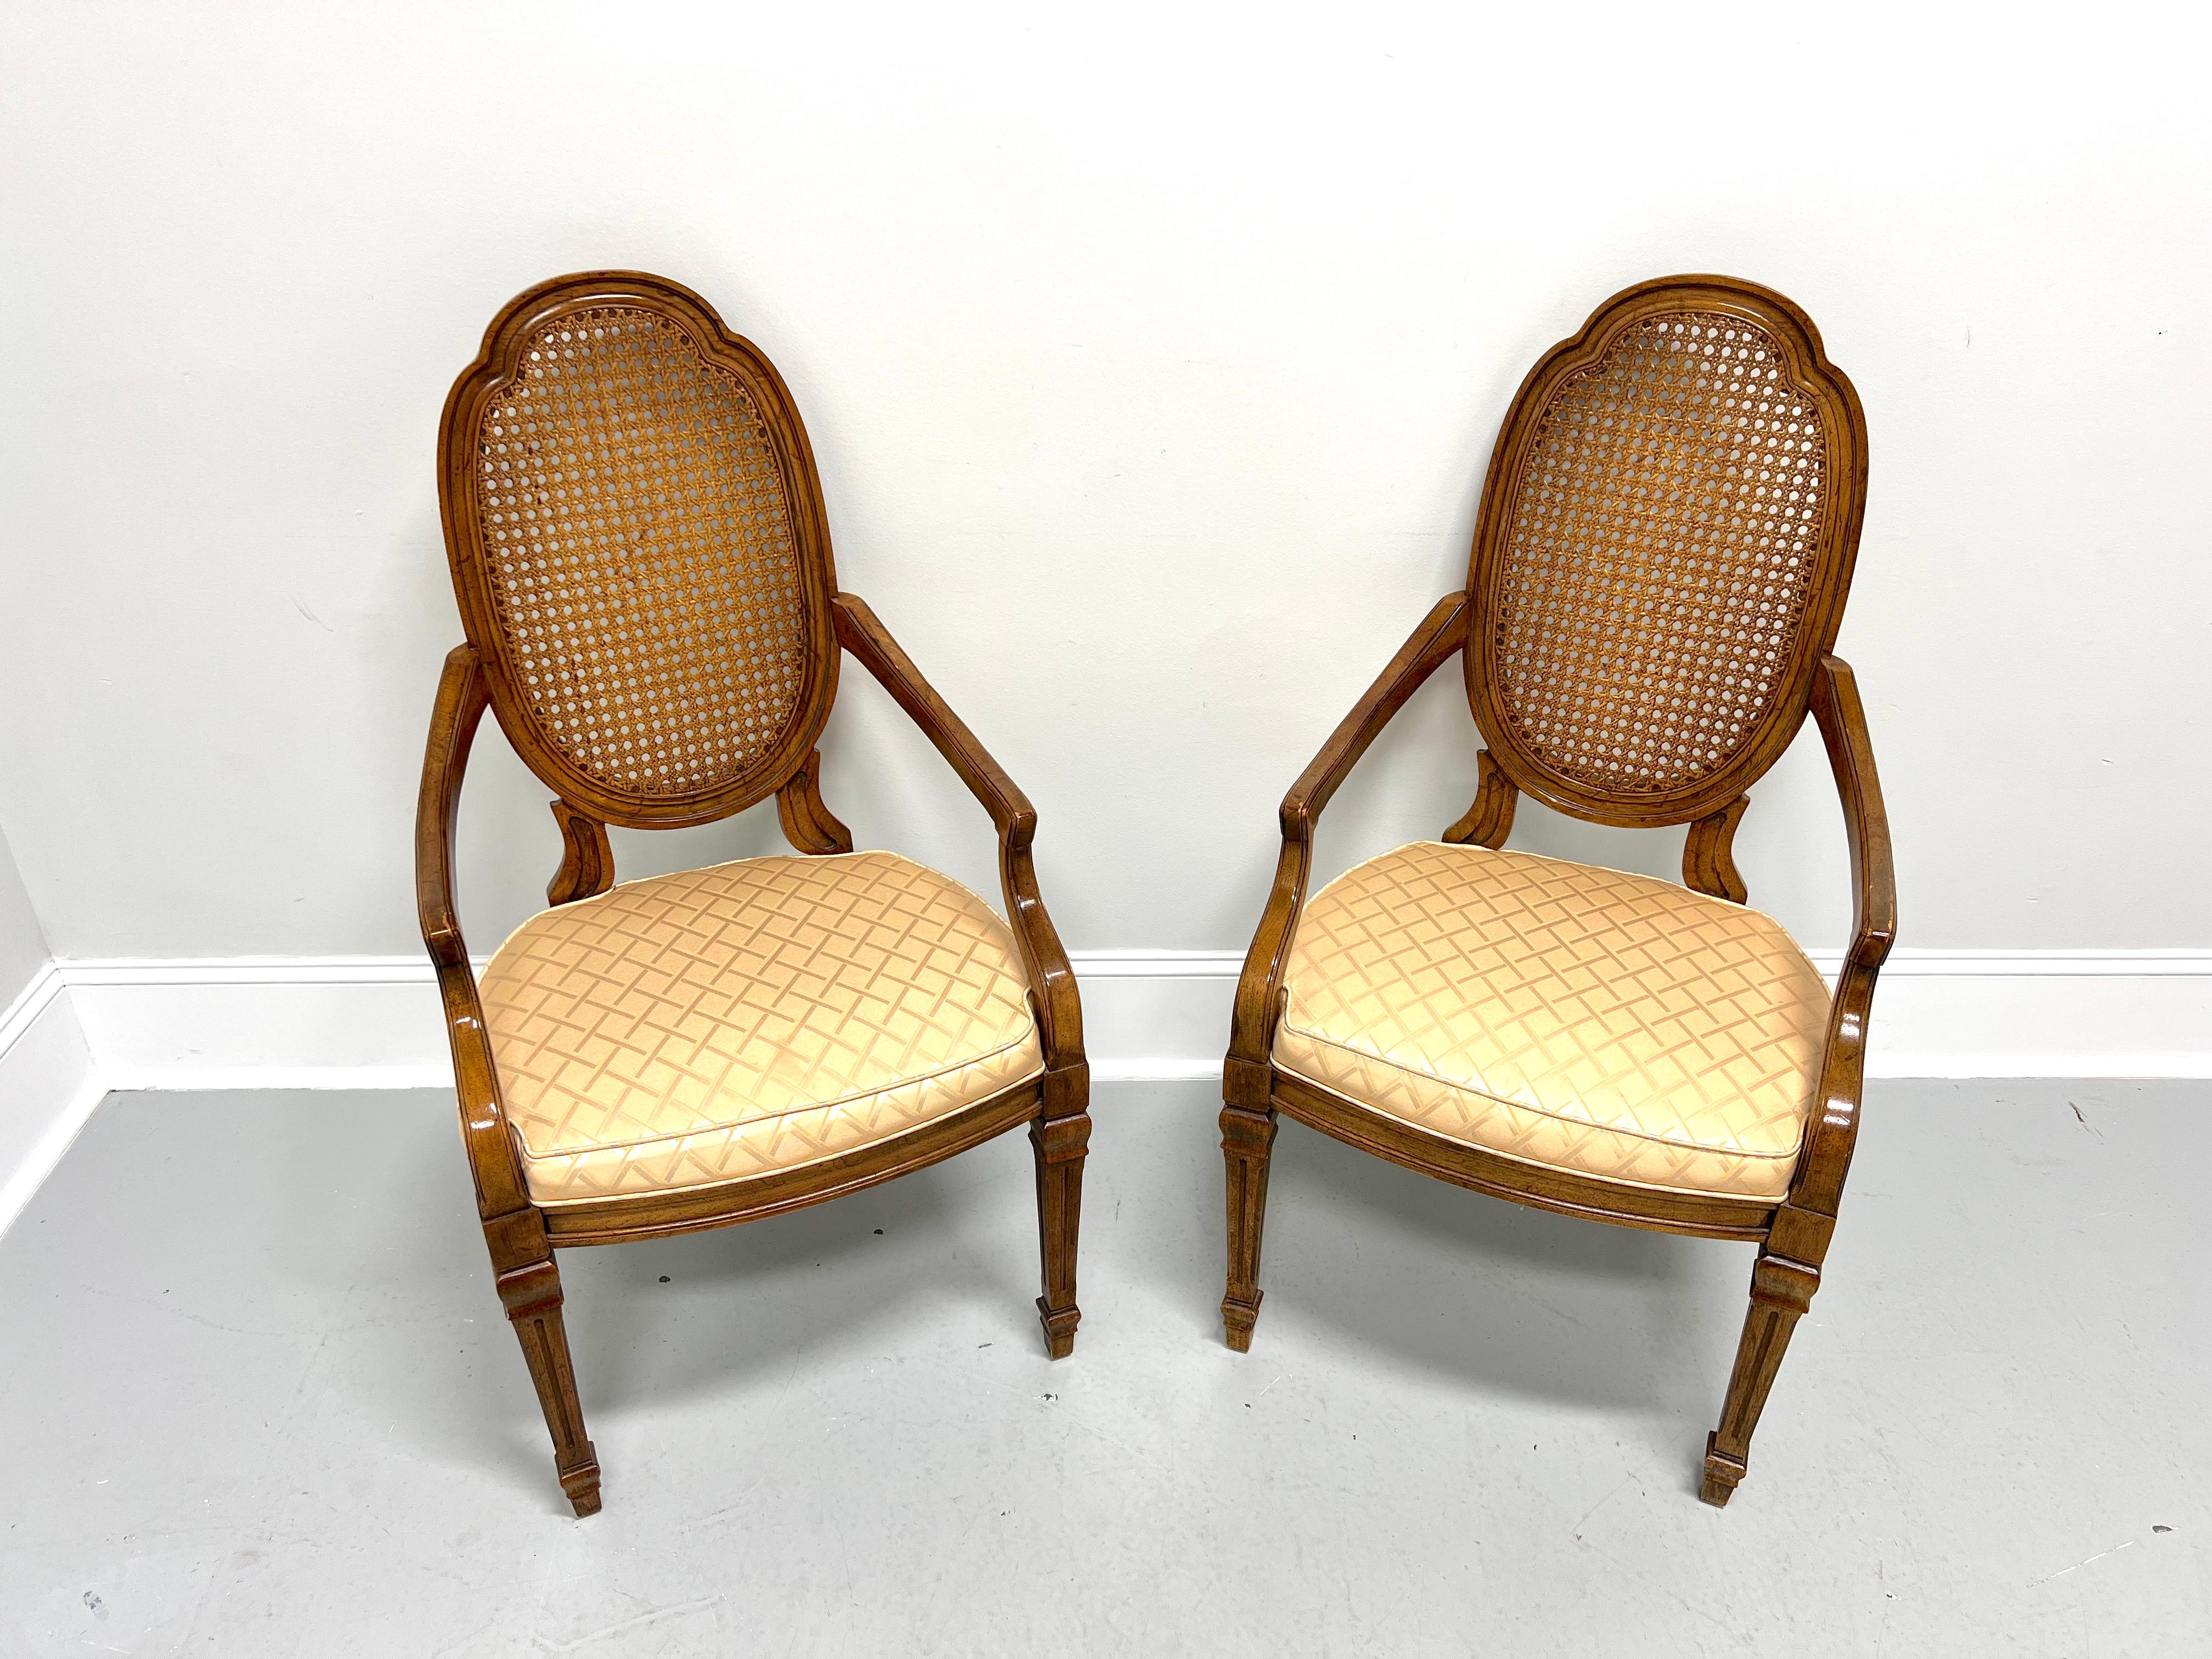 Ein Paar Esstischsessel im Louis-XVI-Stil von Drexel Heritage im französischen Stil. Nussbaumholz mit leicht abgenutztem Finish, geschnitzte ovale schildförmige Rückenlehnen, schräge gerade Arme mit gebogenen Stützen, goldfarbene gepolsterte Sitze